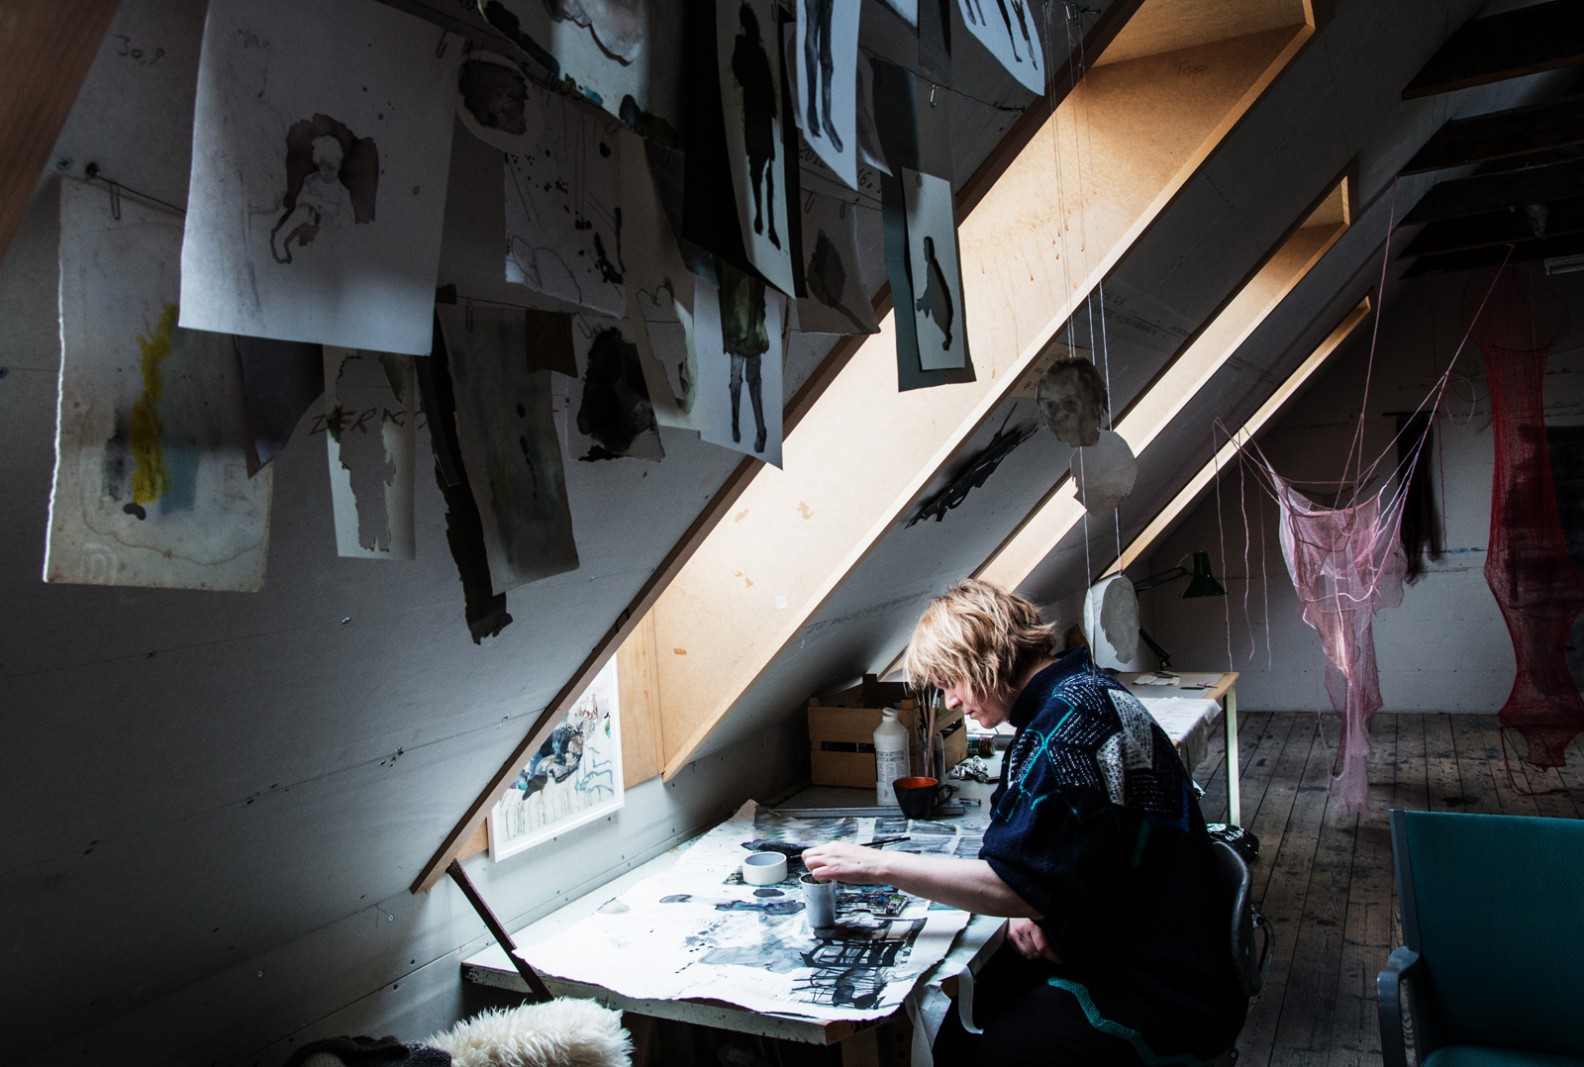 På besøg i billedkunstner Luise Faurholts værksted</br>En stor gruppe af Luise Faurholts billeder hænger til tørre i loftet.</br>Foto: Mariana Gil